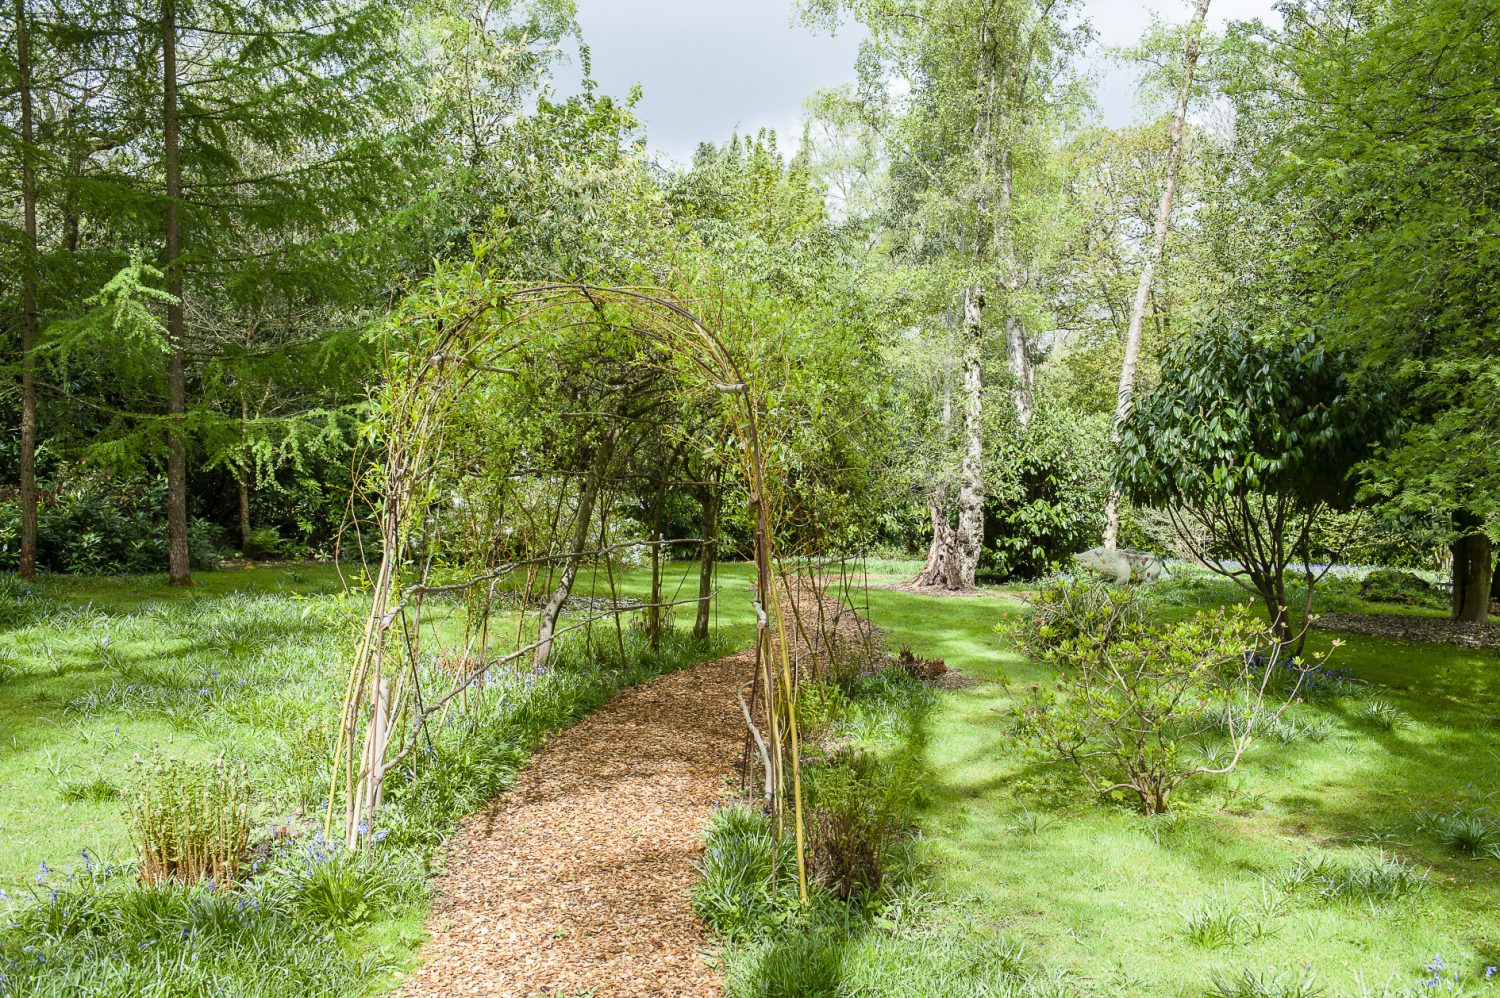 A path meanders through the garden